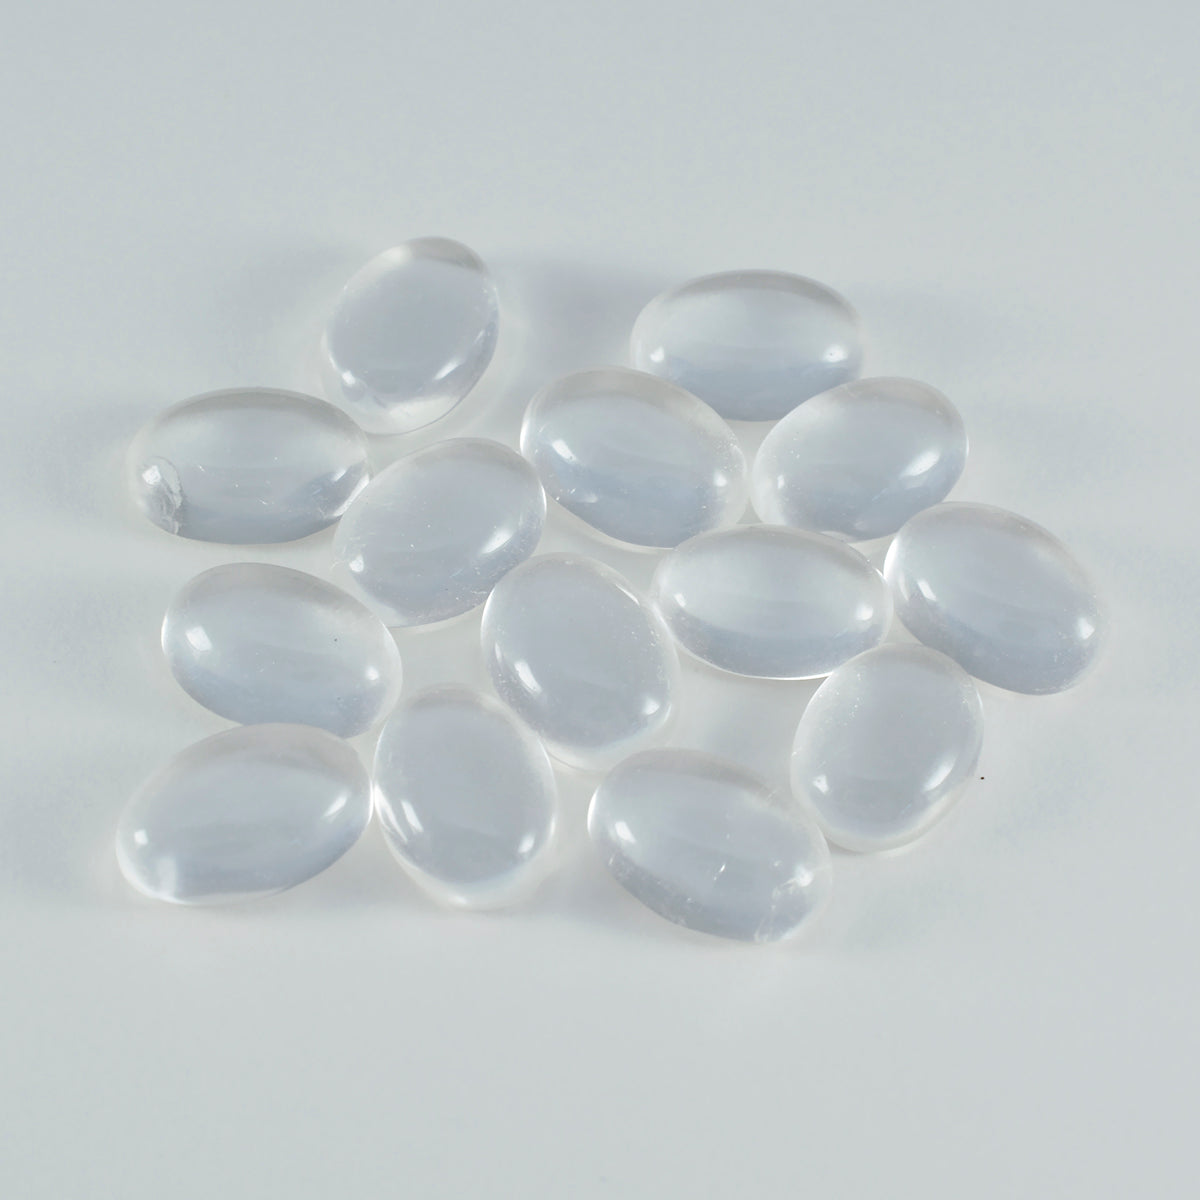 Riyogems 1 Stück weißer Kristallquarz-Cabochon, 9 x 11 mm, ovale Form, toller Qualitätsstein